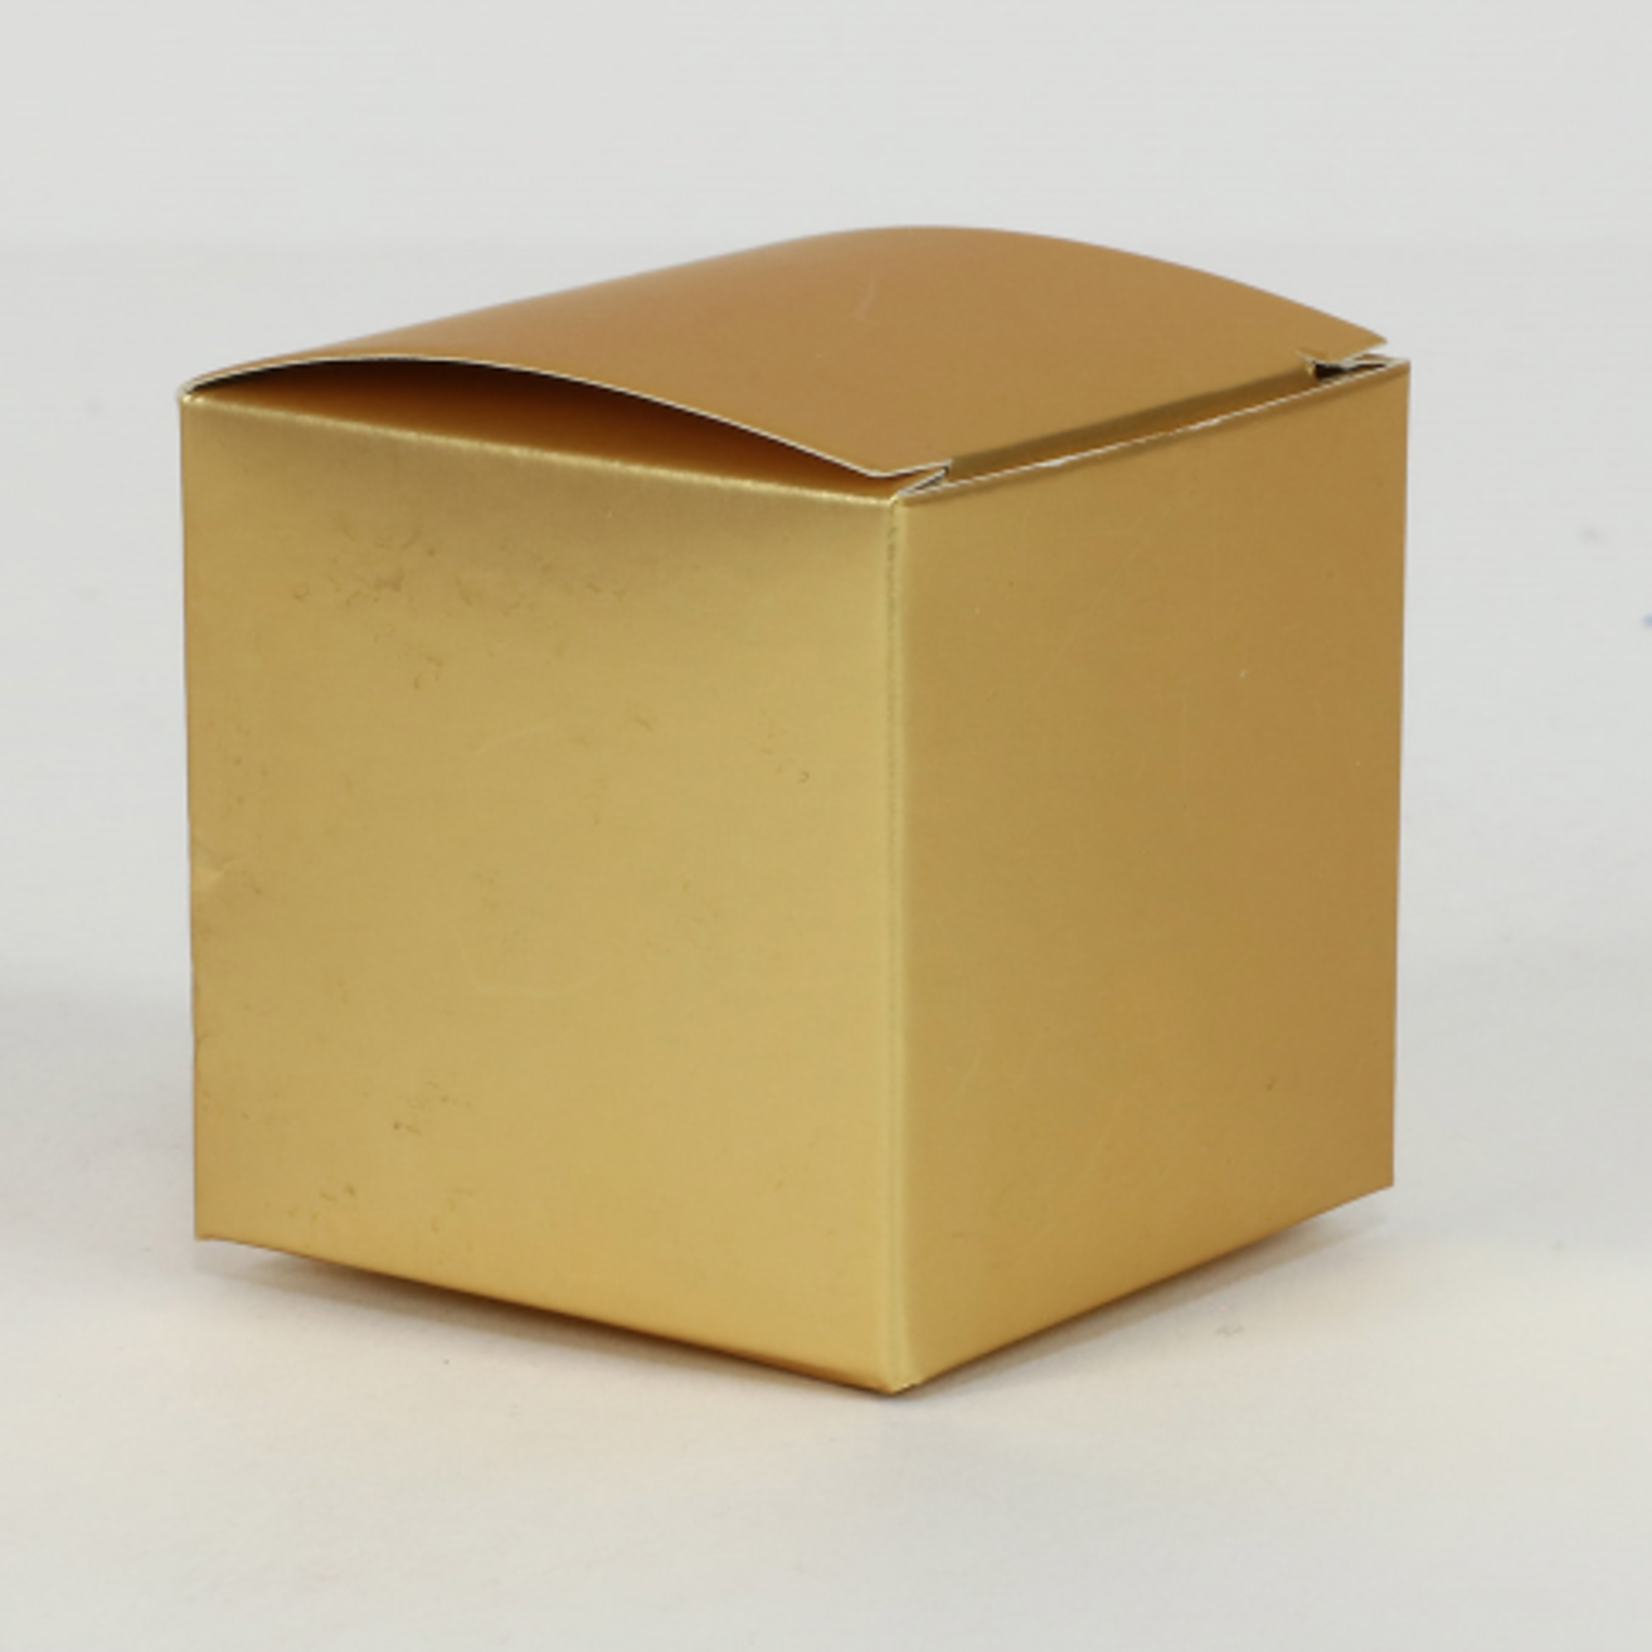 2’’ CUBE BOX, 24 PCS